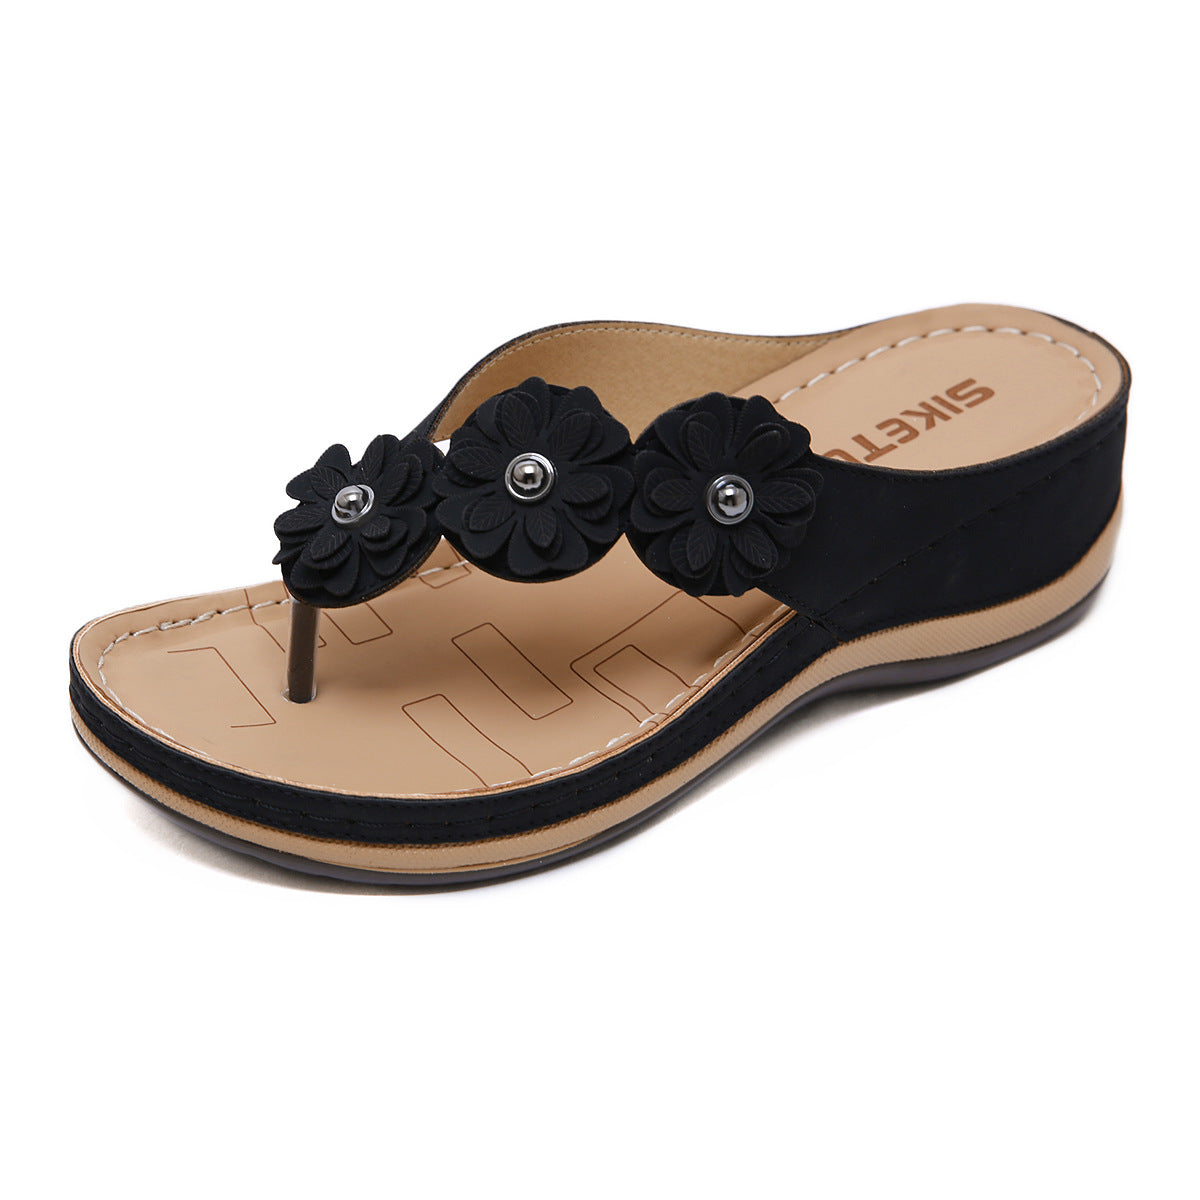 Ladies wedge sandals - ladieskits - 0